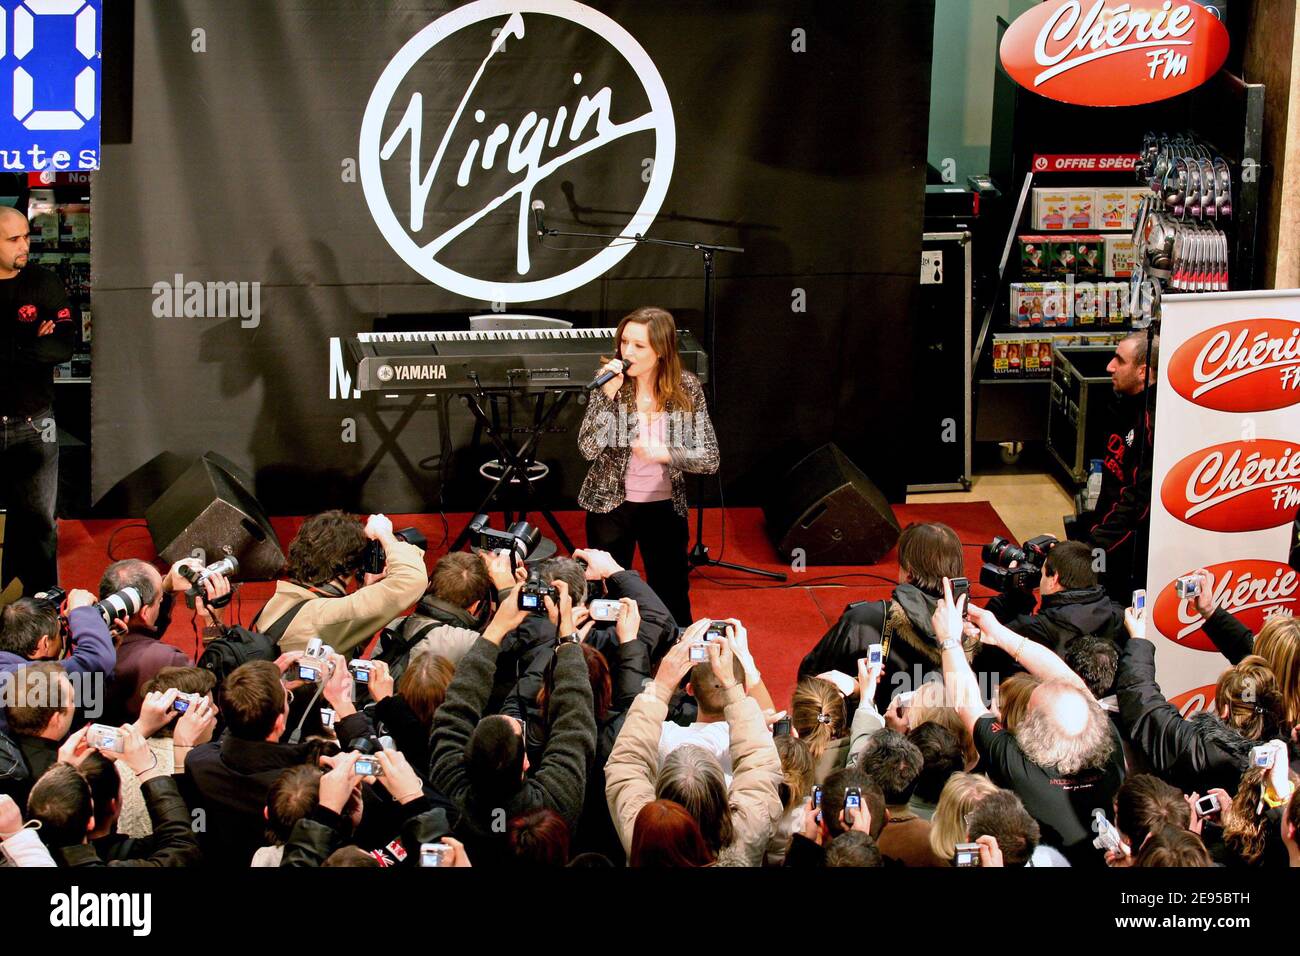 Canadian Singer Natasha St-Pier promuove il suo nuovo CD con una performance al Virgin Megastore sugli Champs Elysees a Parigi il 16 gennaio 2006. Foto di Denis Guignebourg/ABACAPRESS.COM Foto Stock